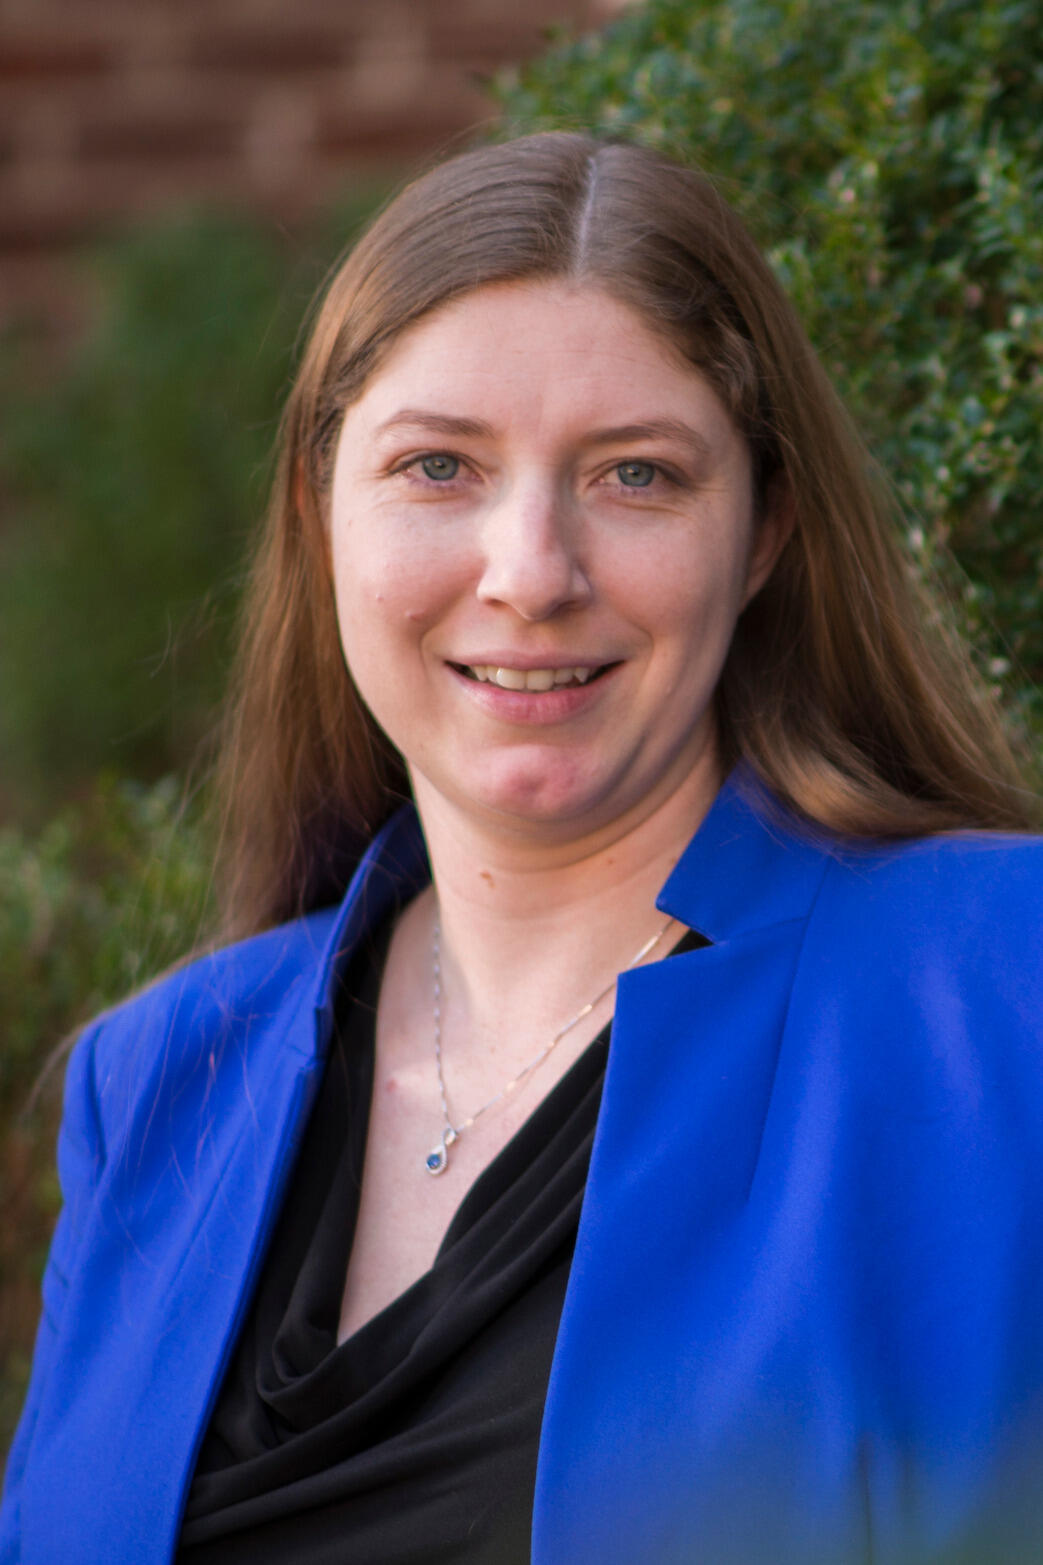 Amanda Wintersieck, Ph.D.
